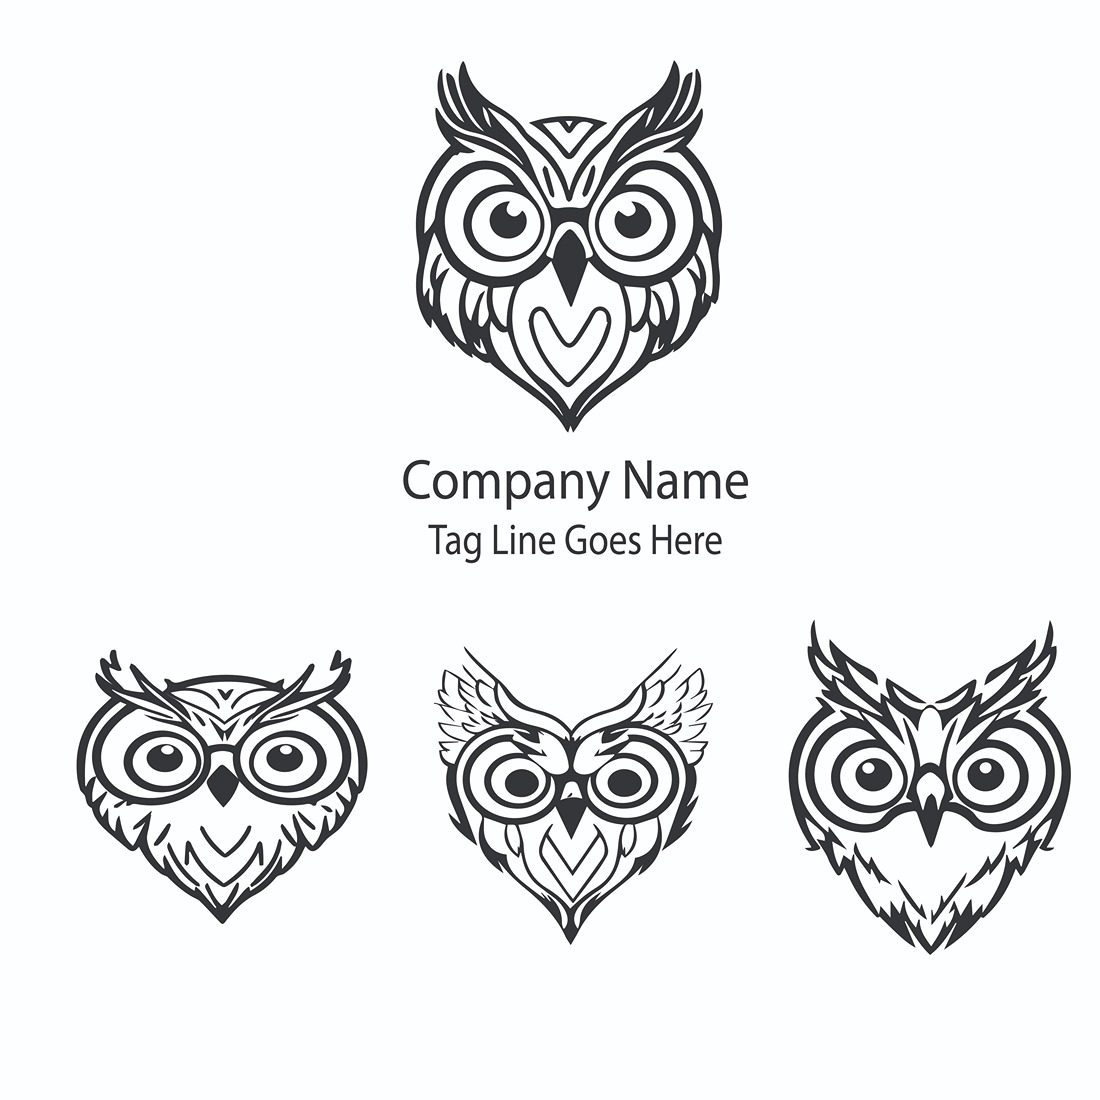 owl head logo 03 01 11zon 20